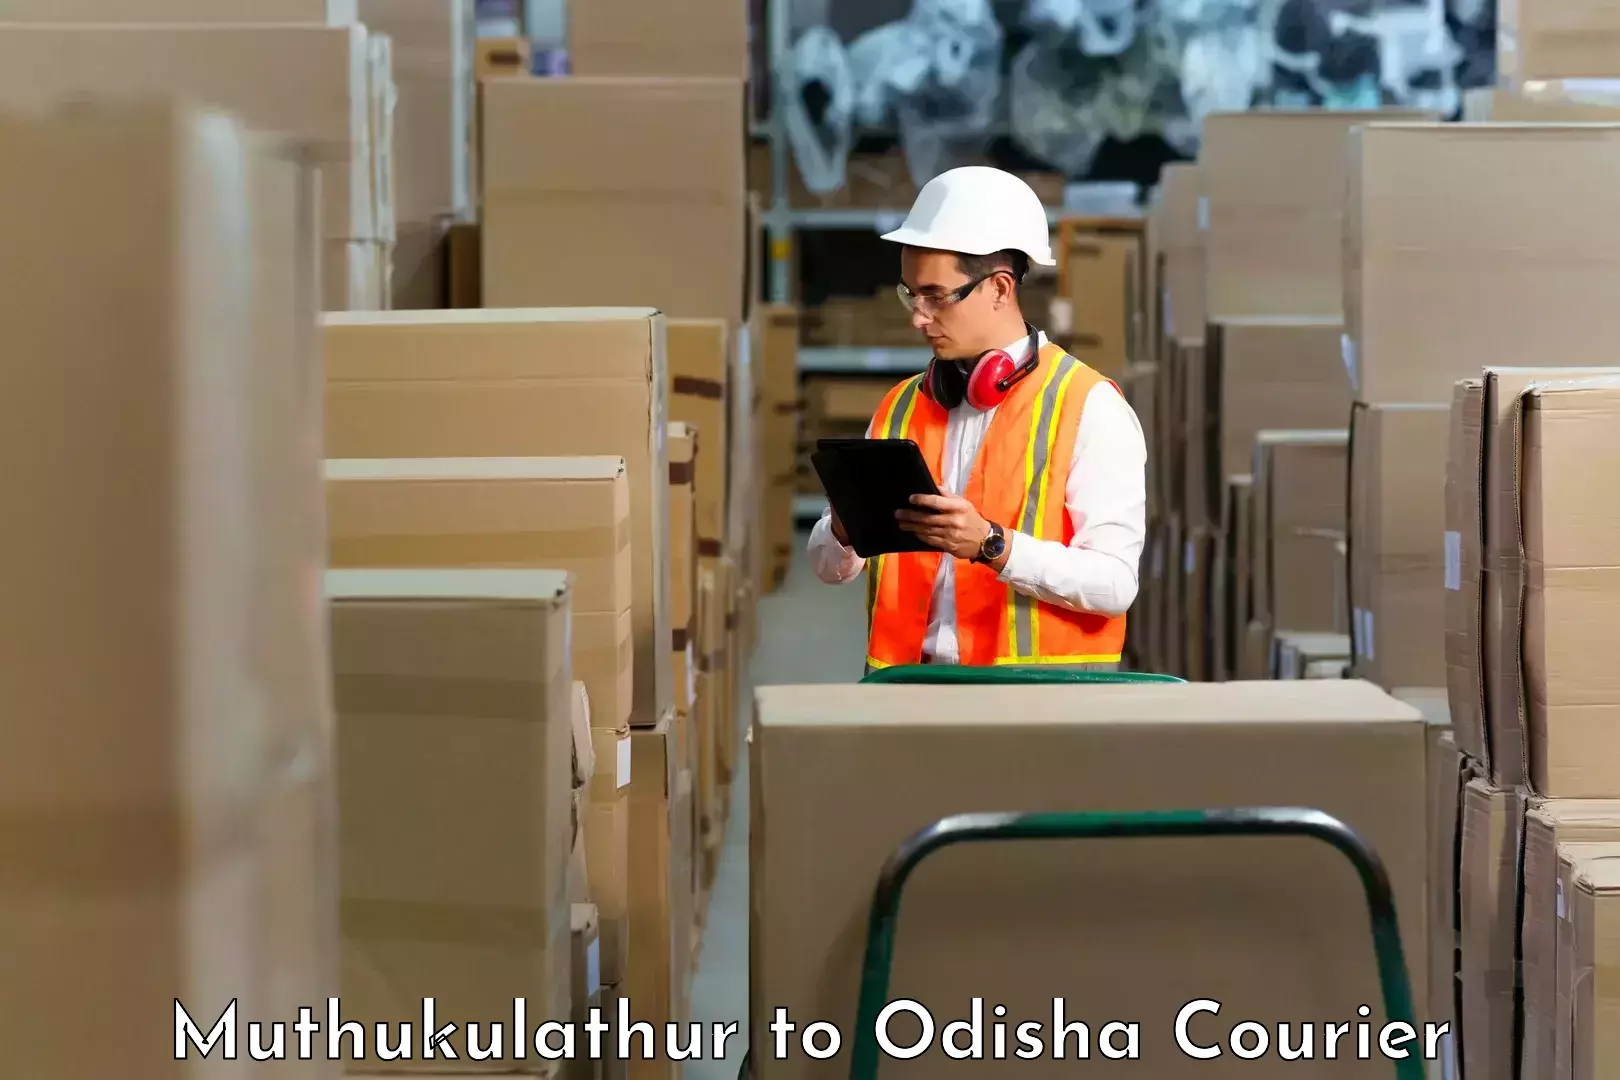 Large package courier Muthukulathur to Kuchinda